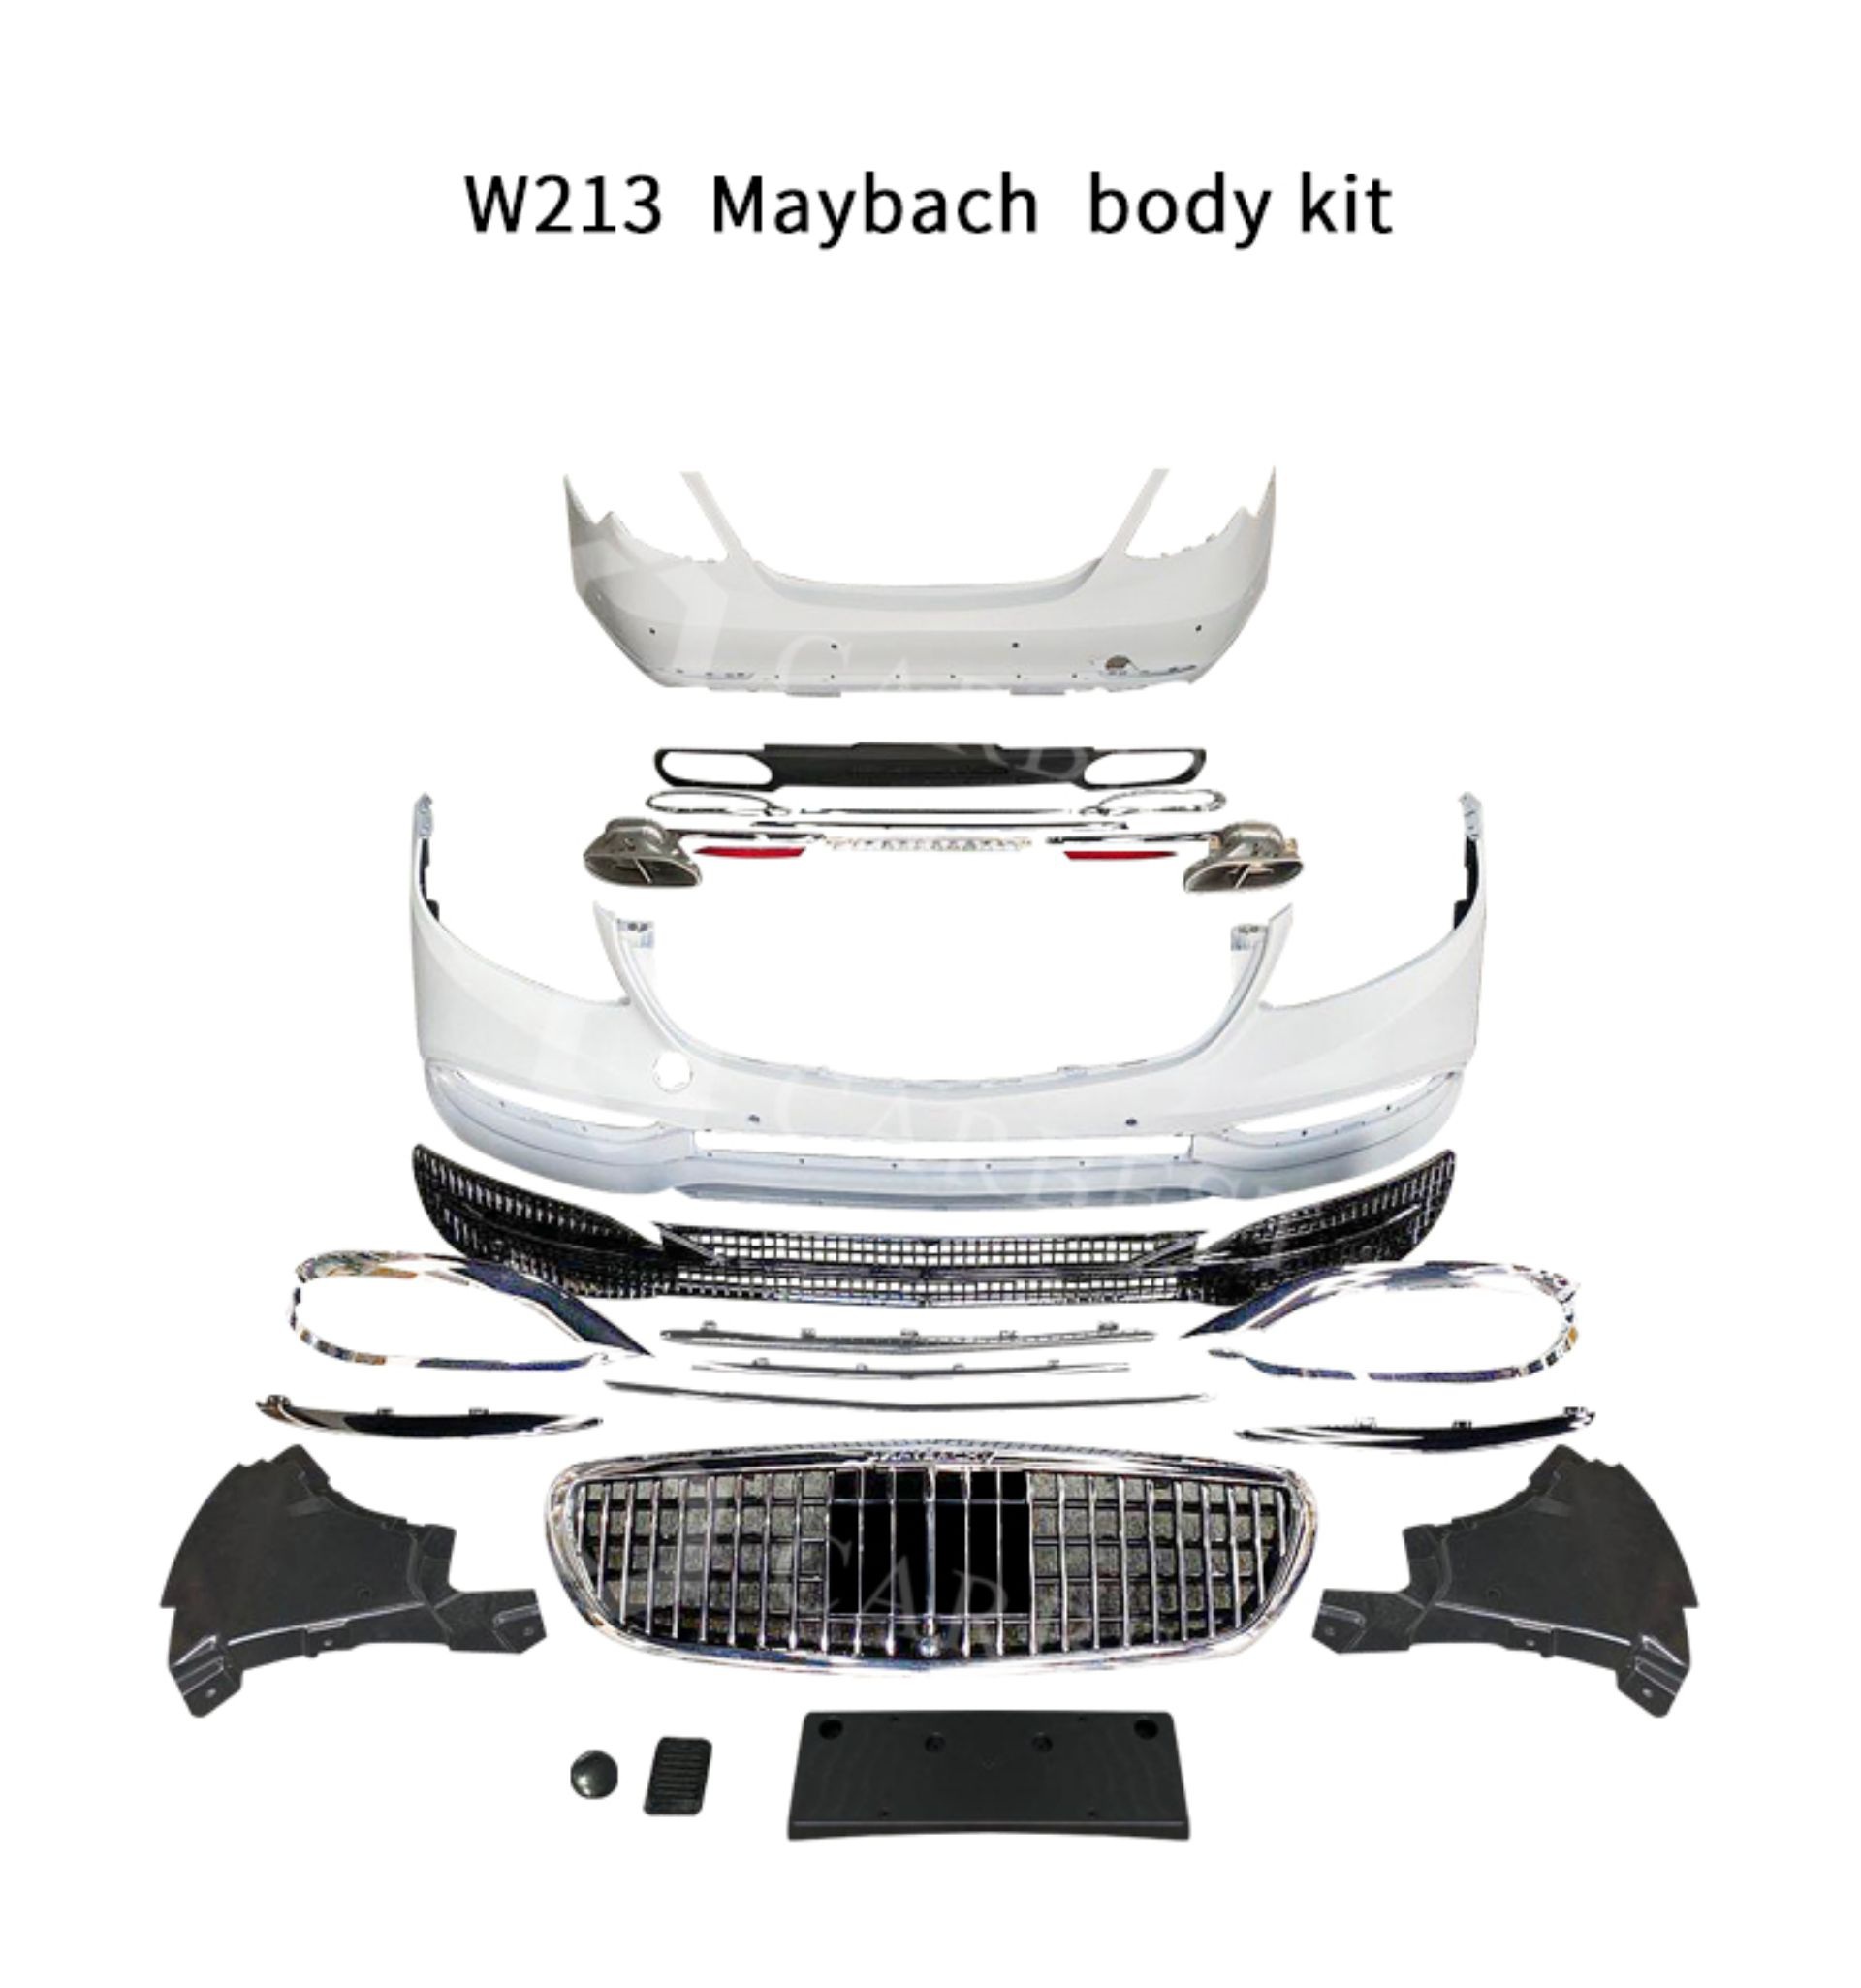 Hô biến E-Class thành Maybach S-Class bằng bộ bodykit giá chỉ 1.500 USD - 2